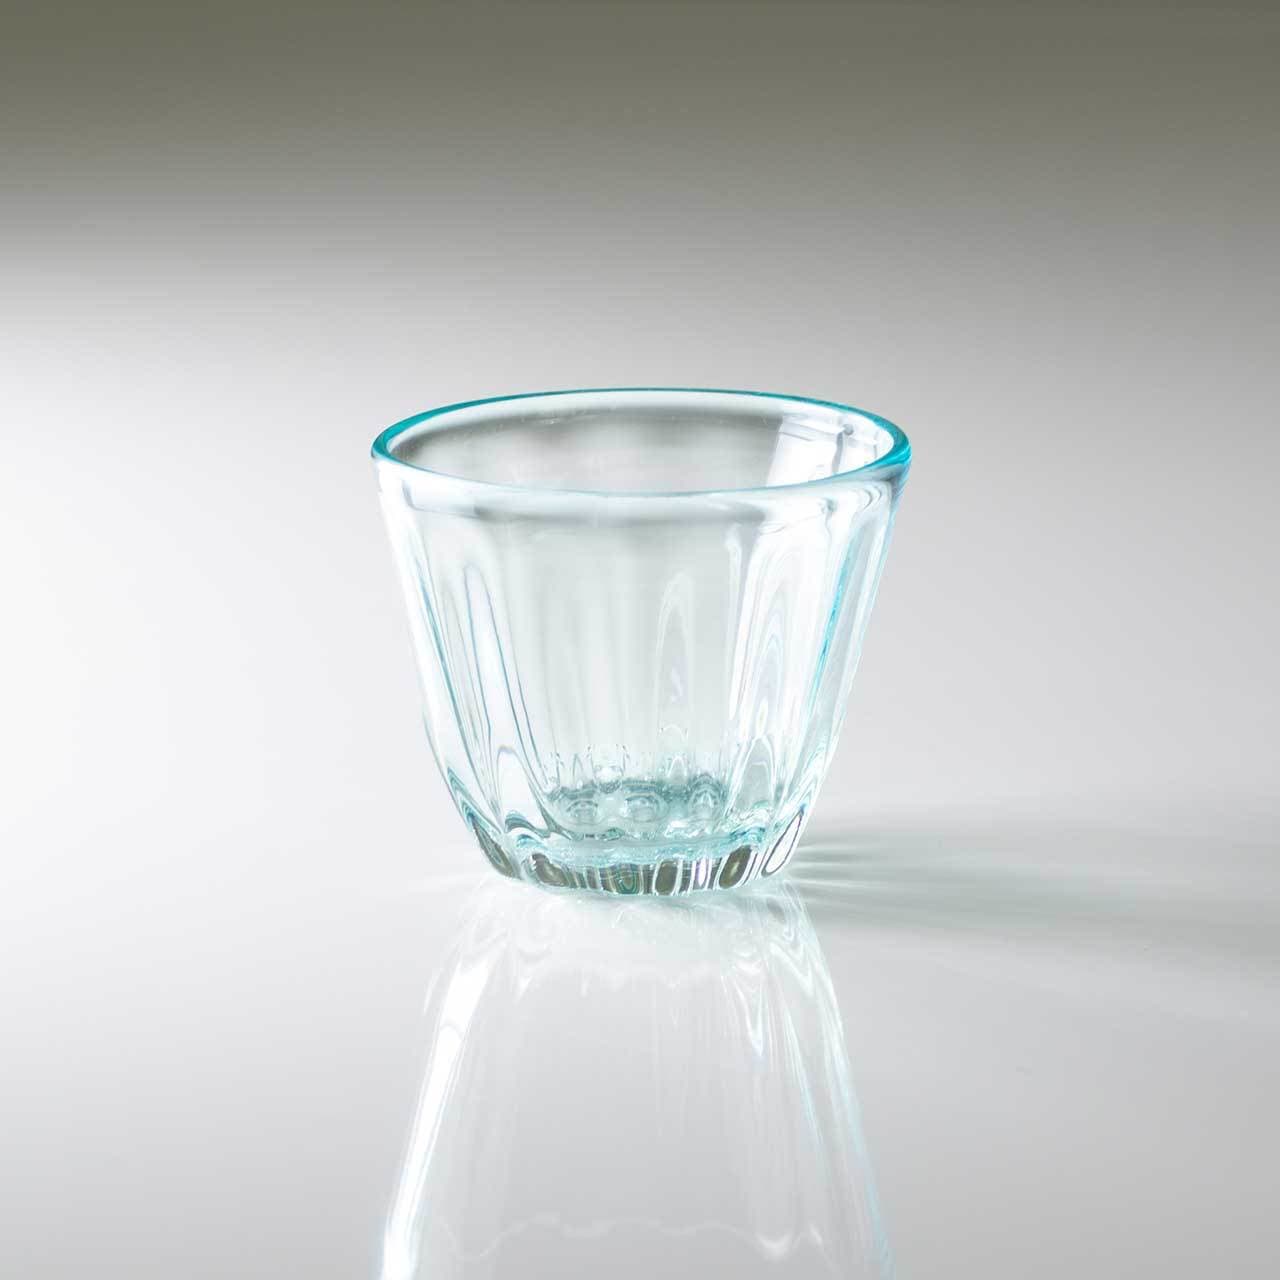 琉球ガラス-白鴉再生硝子器製作所-そばちょこカップ-水色